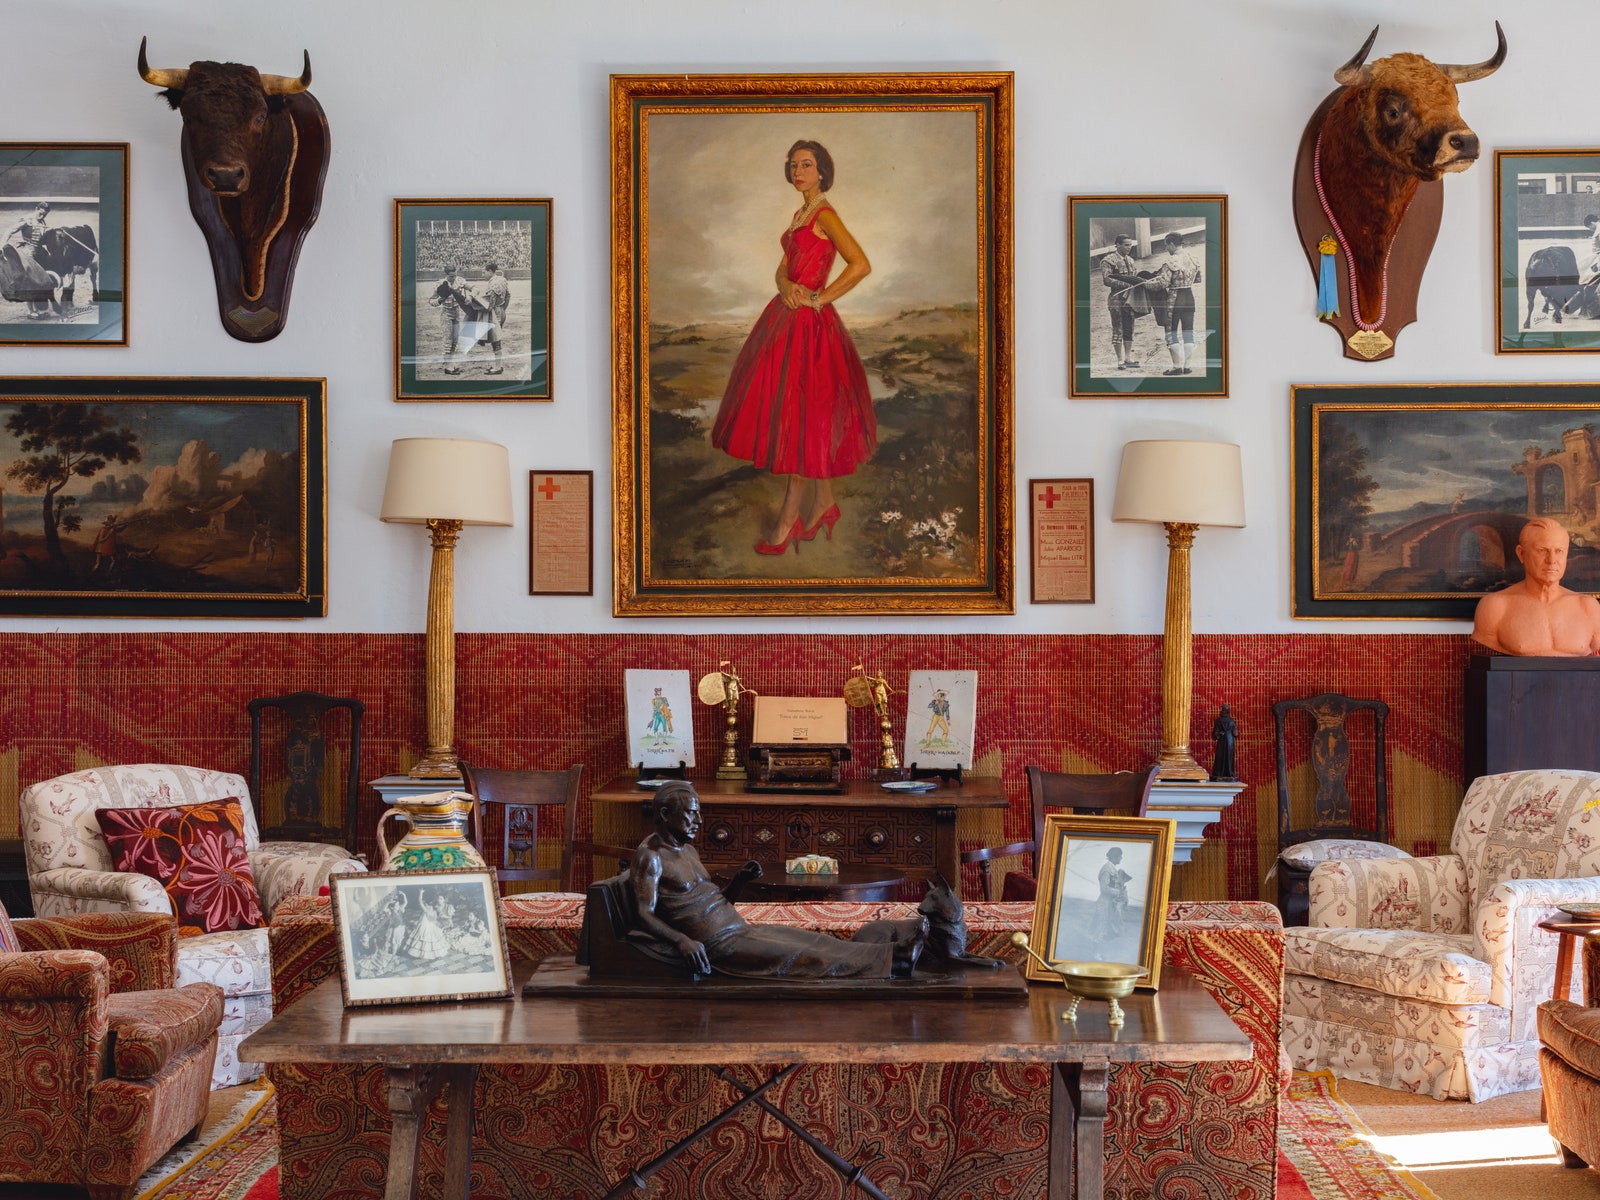 Decorator Javier González Sánchez-Dalp’s house near Seville is filled with mementos of his parents